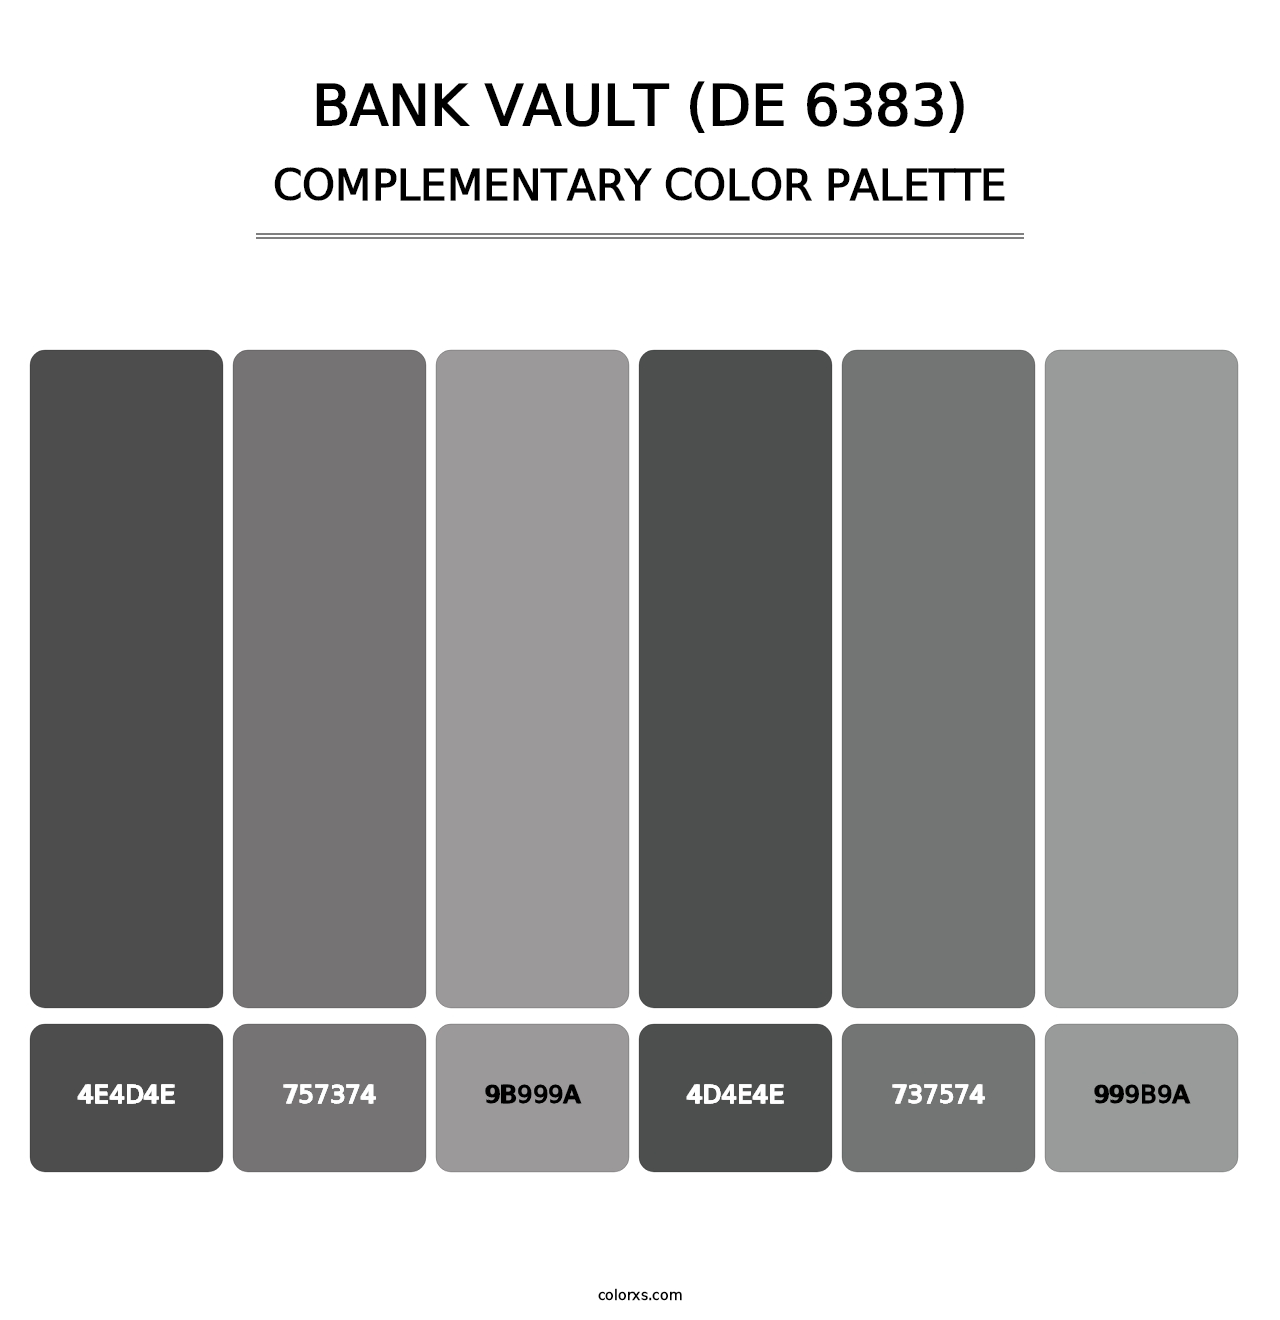 Bank Vault (DE 6383) - Complementary Color Palette